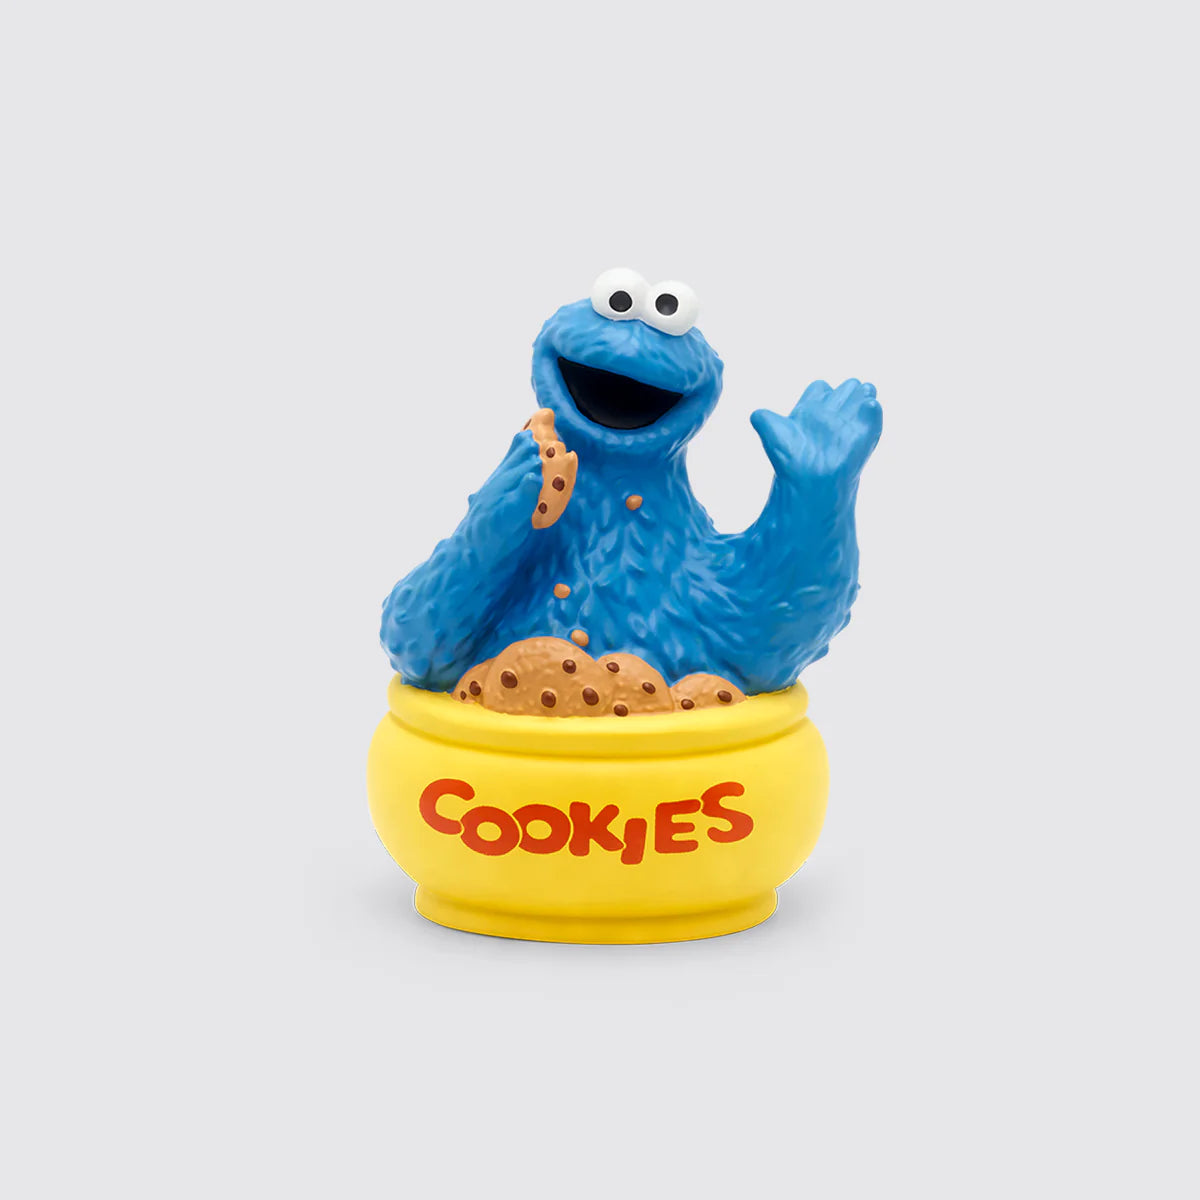 Sesame Street: Cookie Monster by Tonies #10000630